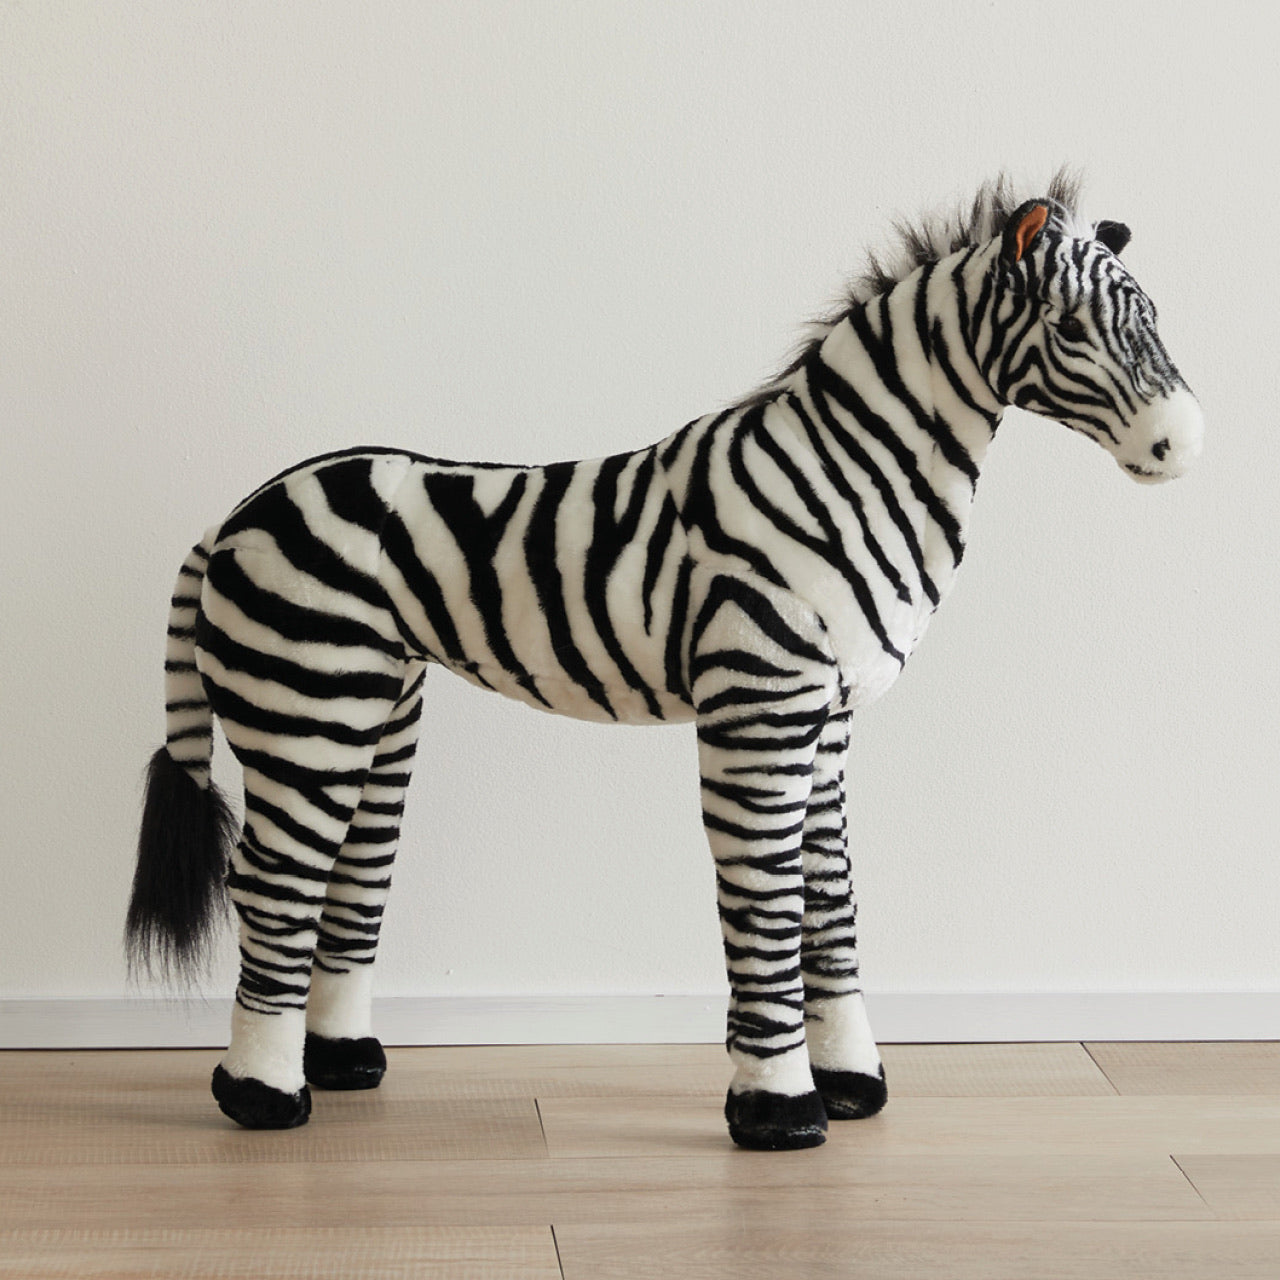 Zebra Standing Animal standing on floor